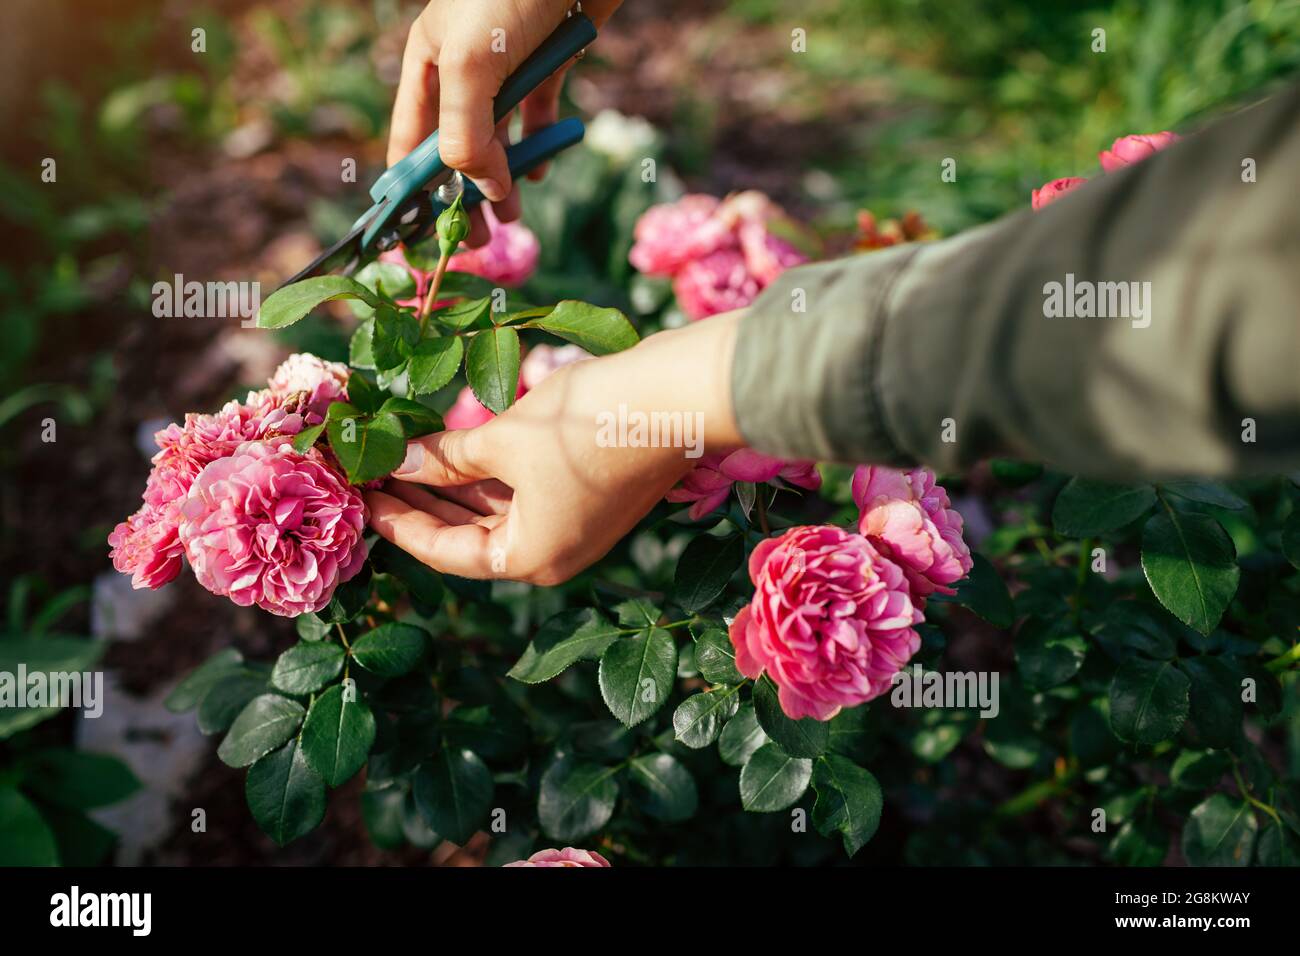 Una mujer que se está deadheading seco leonardo da vinci rosa en el jardín de verano. Jardinero cortando flores gastadas marchitadas con poda. Foto de stock